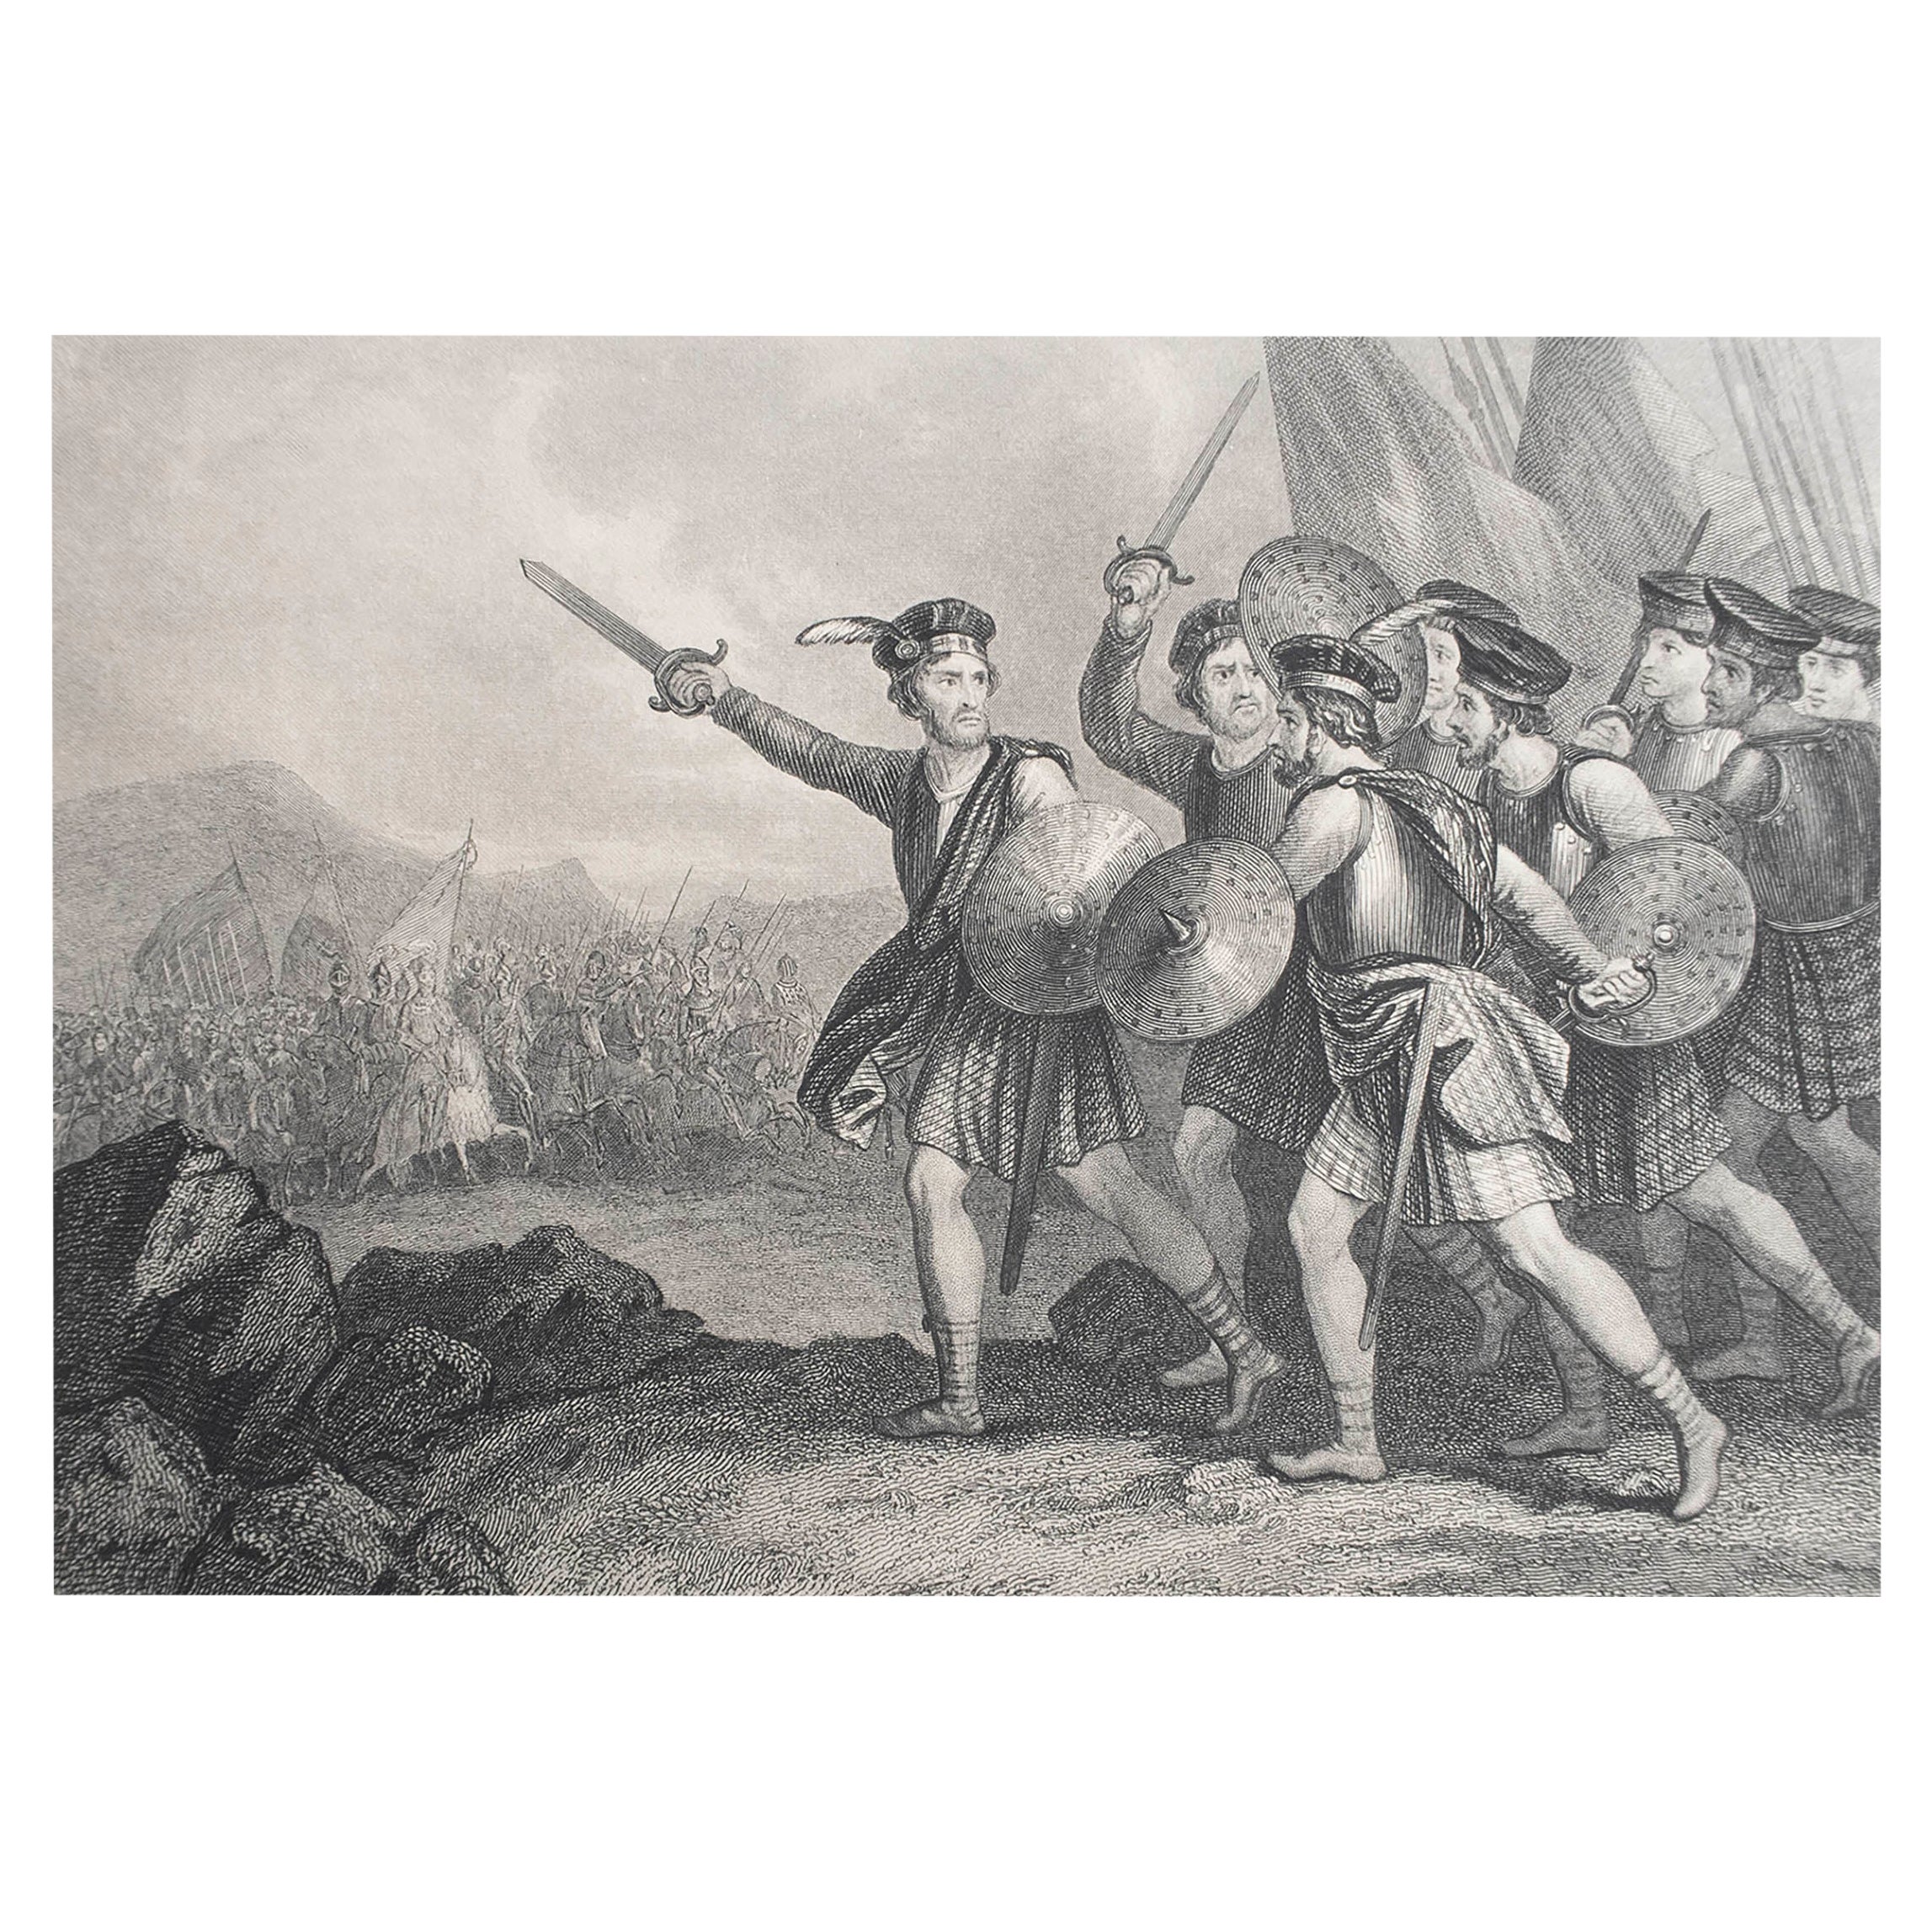 Original Antique Print of William Wallace In Battle. C.1850